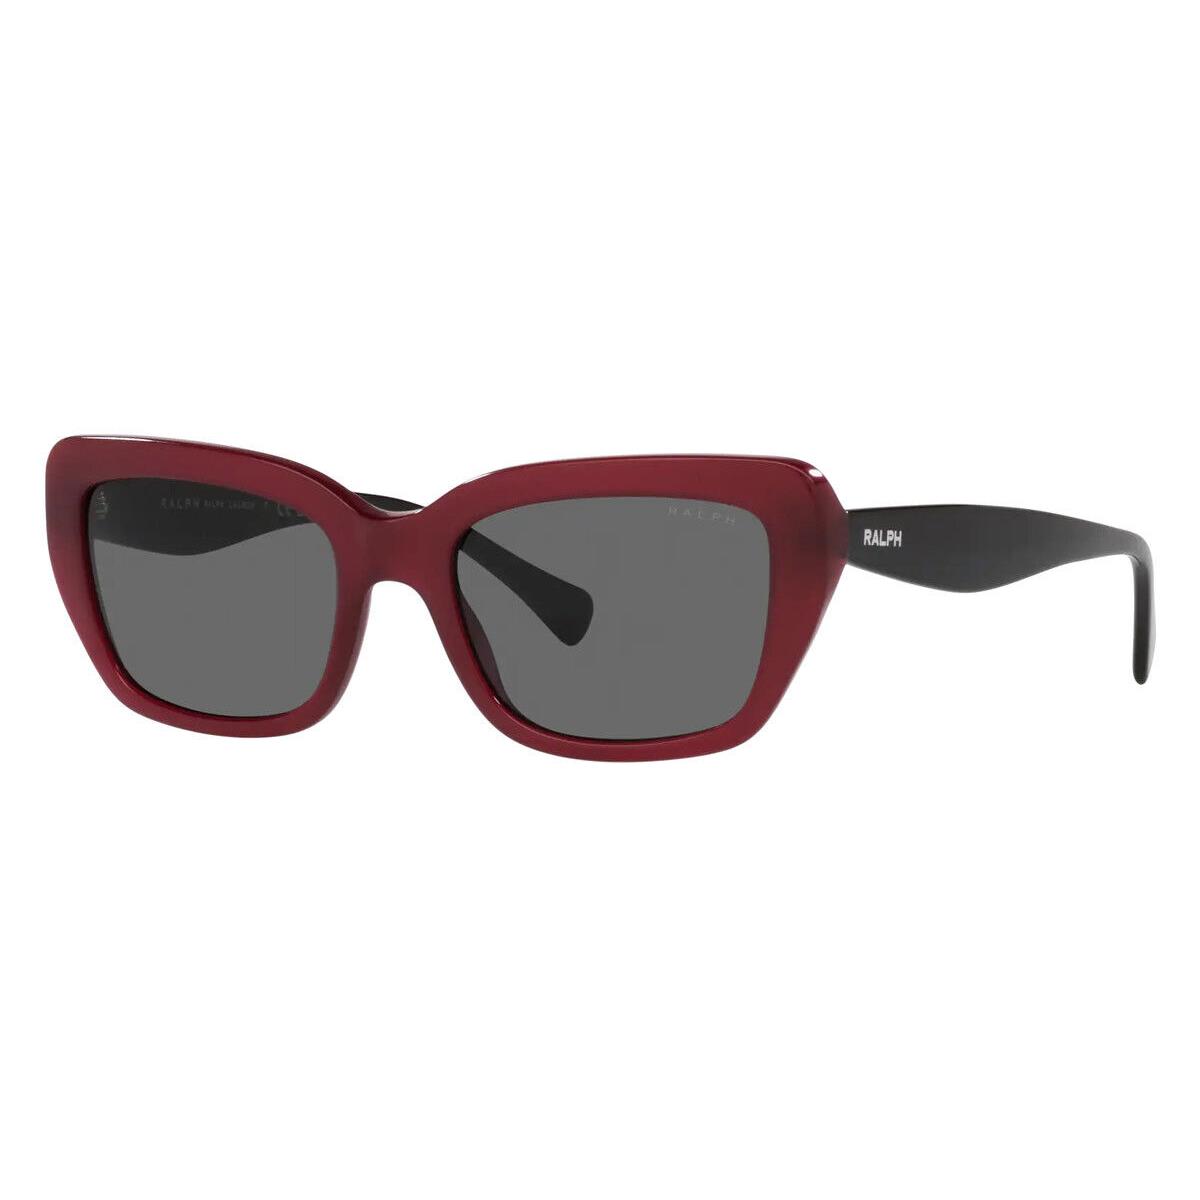 Ralph Lauren RA5292 Sunglasses Shiny Opal Red Dark Gray 53